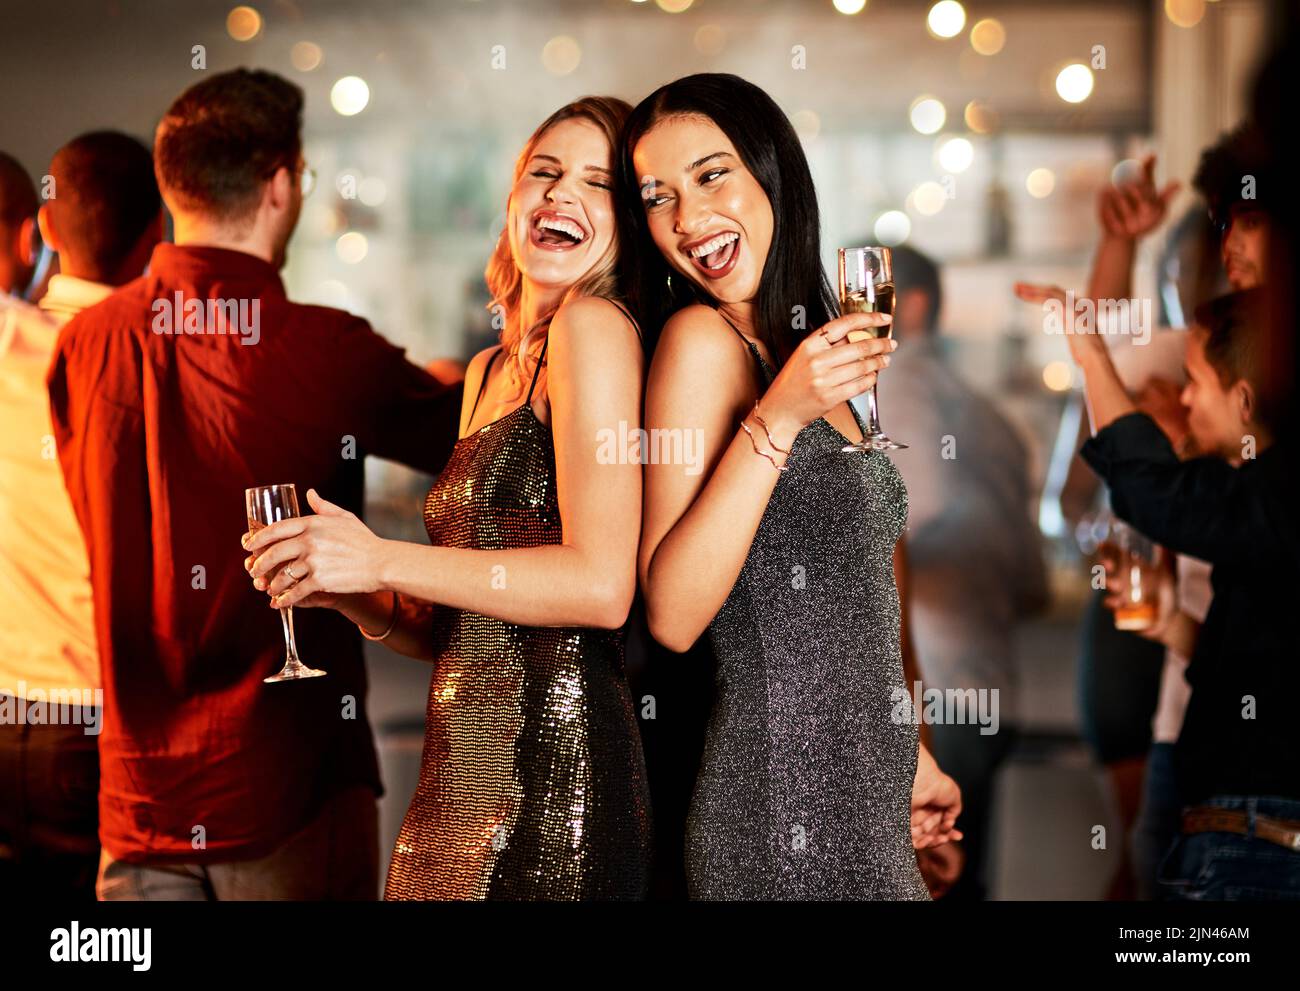 Zwei fröhliche junge Frauen, die abends auf der Tanzfläche eines Clubs tanzen und dabei einen Drink zu sich nehmen. Stockfoto